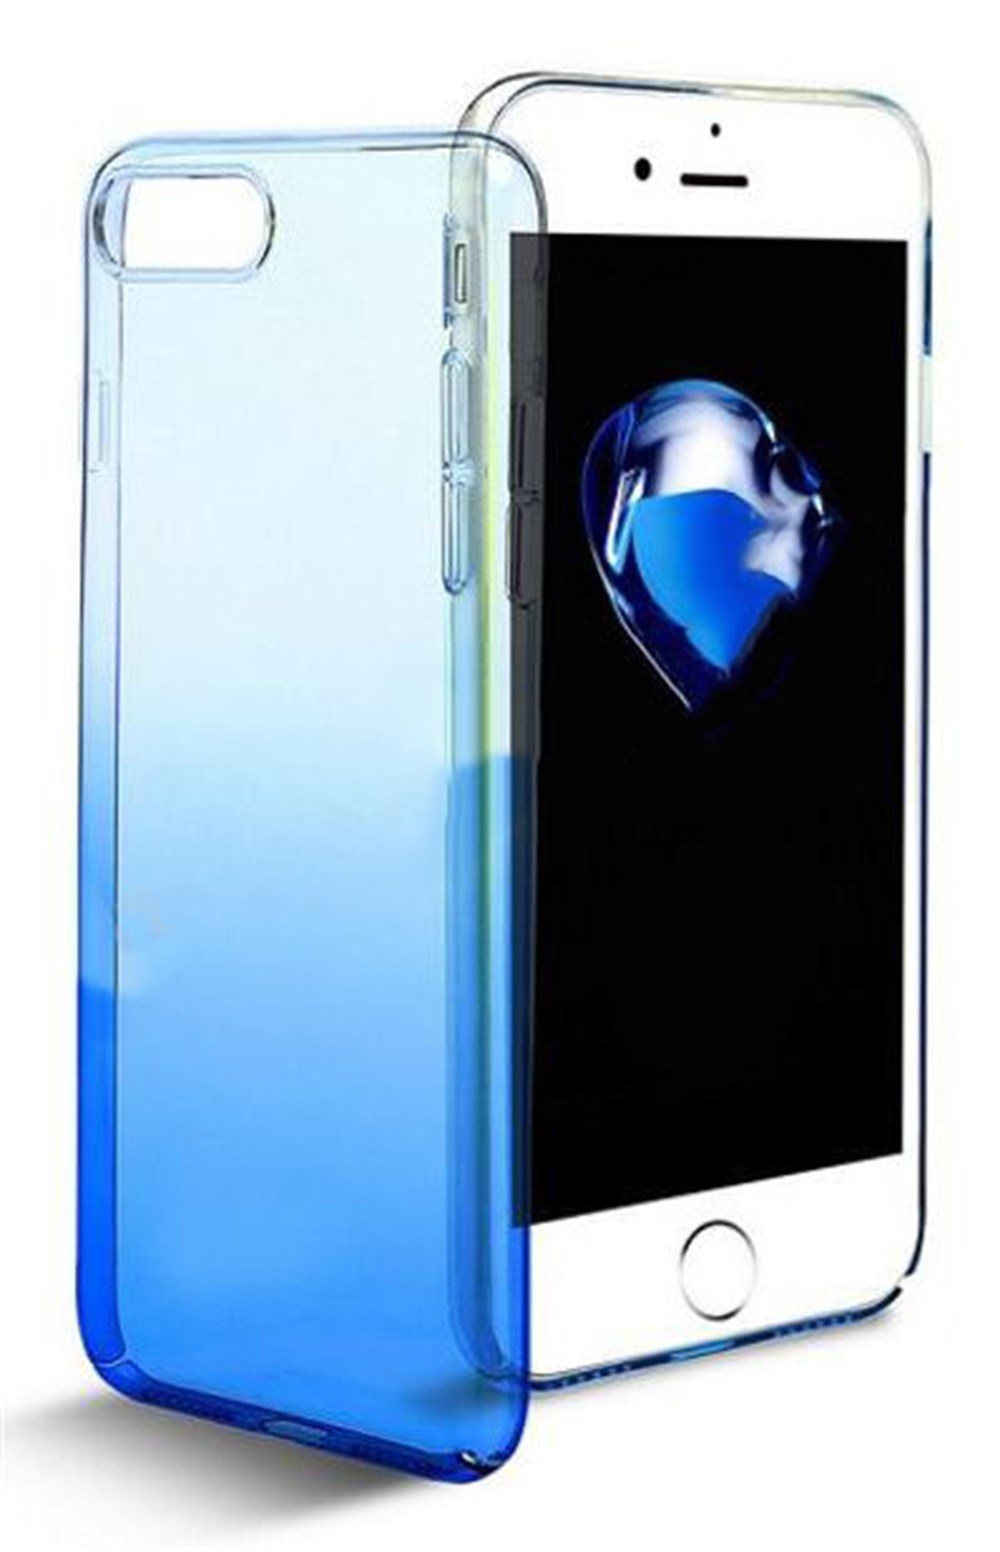 iPhone 6 6S Renk Geçişli Kapak Mavi Kılıf | Ücretsiz Kargo